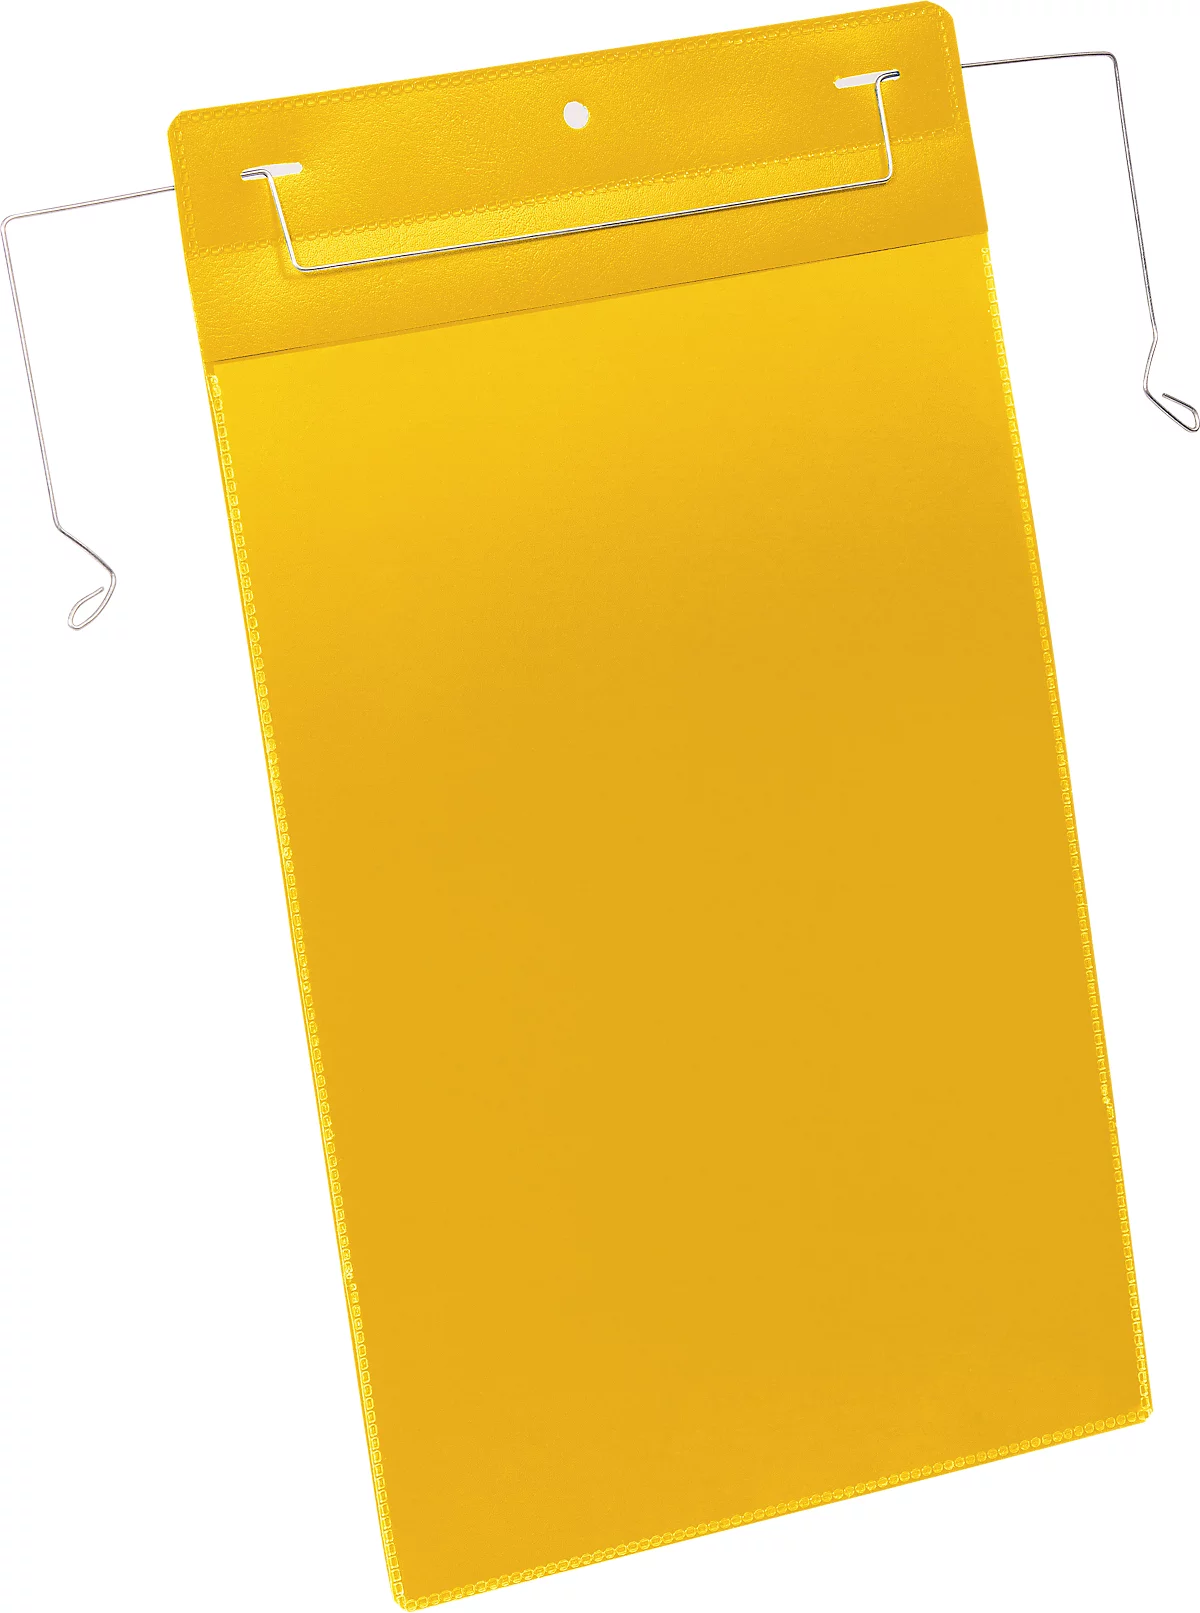 Dokumententaschen mit Drahtbügel, B 210 x H 297 mm (A4 hoch), 50 Stück, gelb